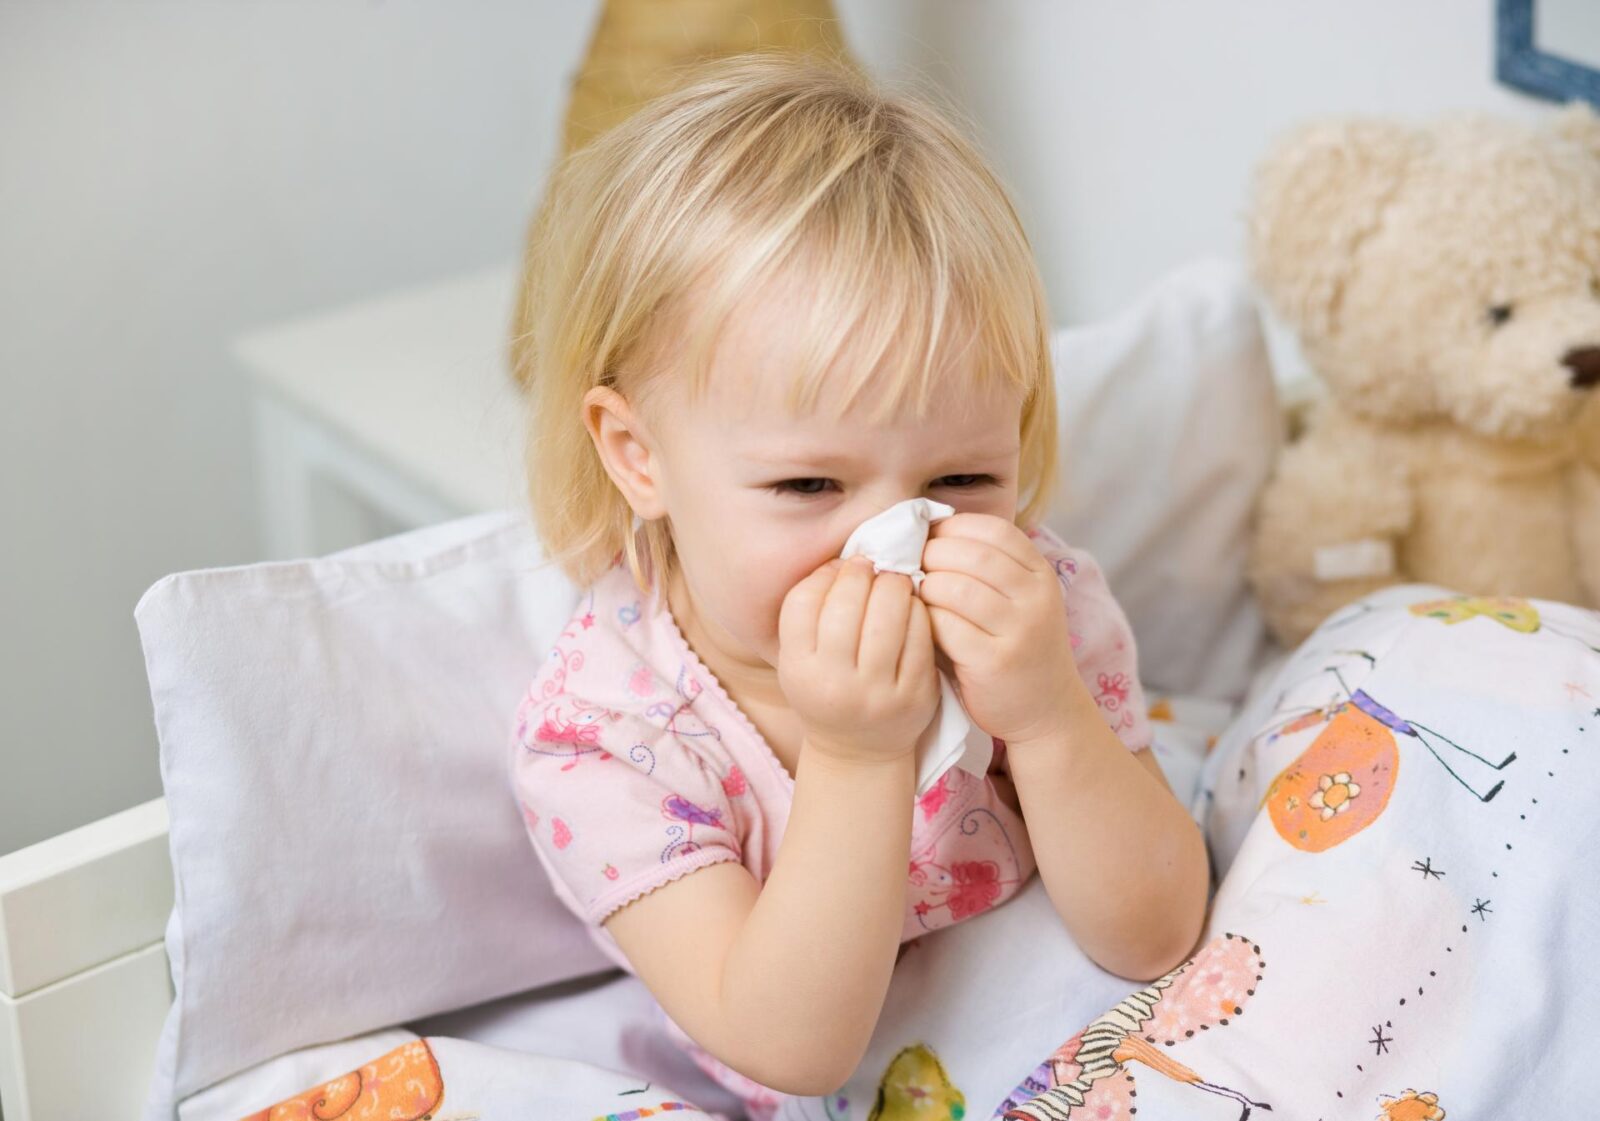 Болезнь сопровождается заложенностью носа, в результате чего малышу приходится дышать через рот. Если ОРЗ осложняется воспалением в области горла, апноэ становится более отчетливым.